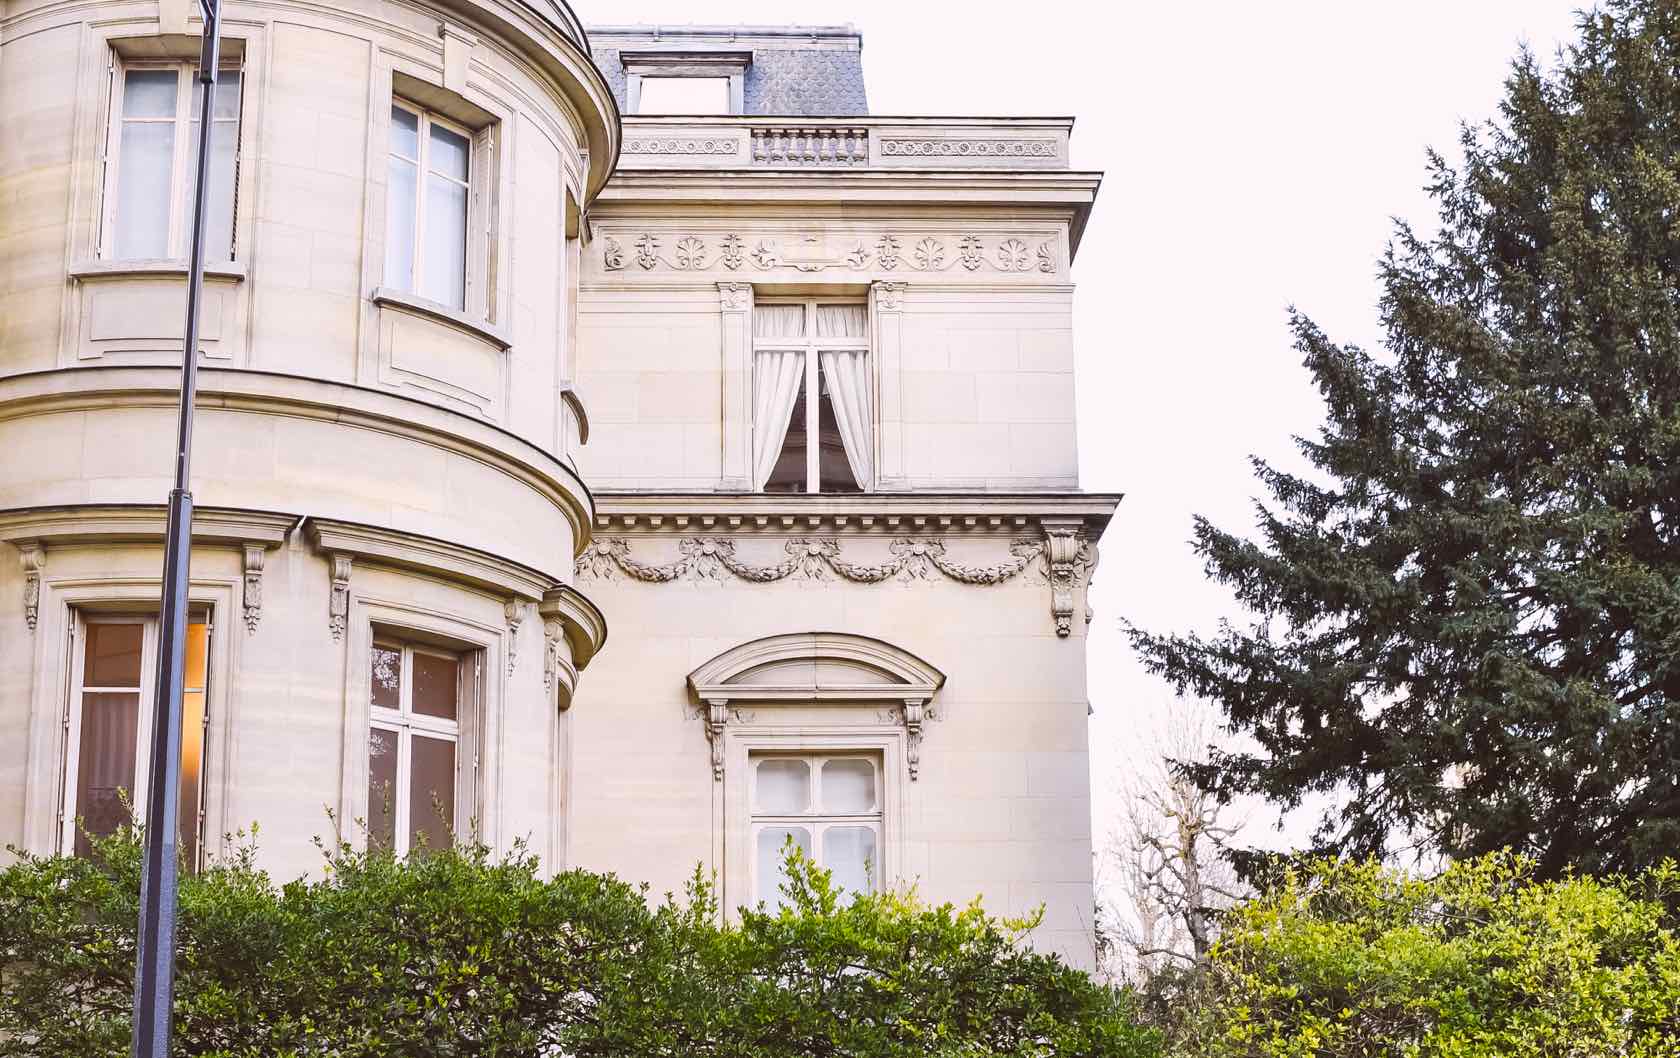 Skip the Crowds: 8 Tourist Places to Avoid in Paris Musée Marmottan Monet